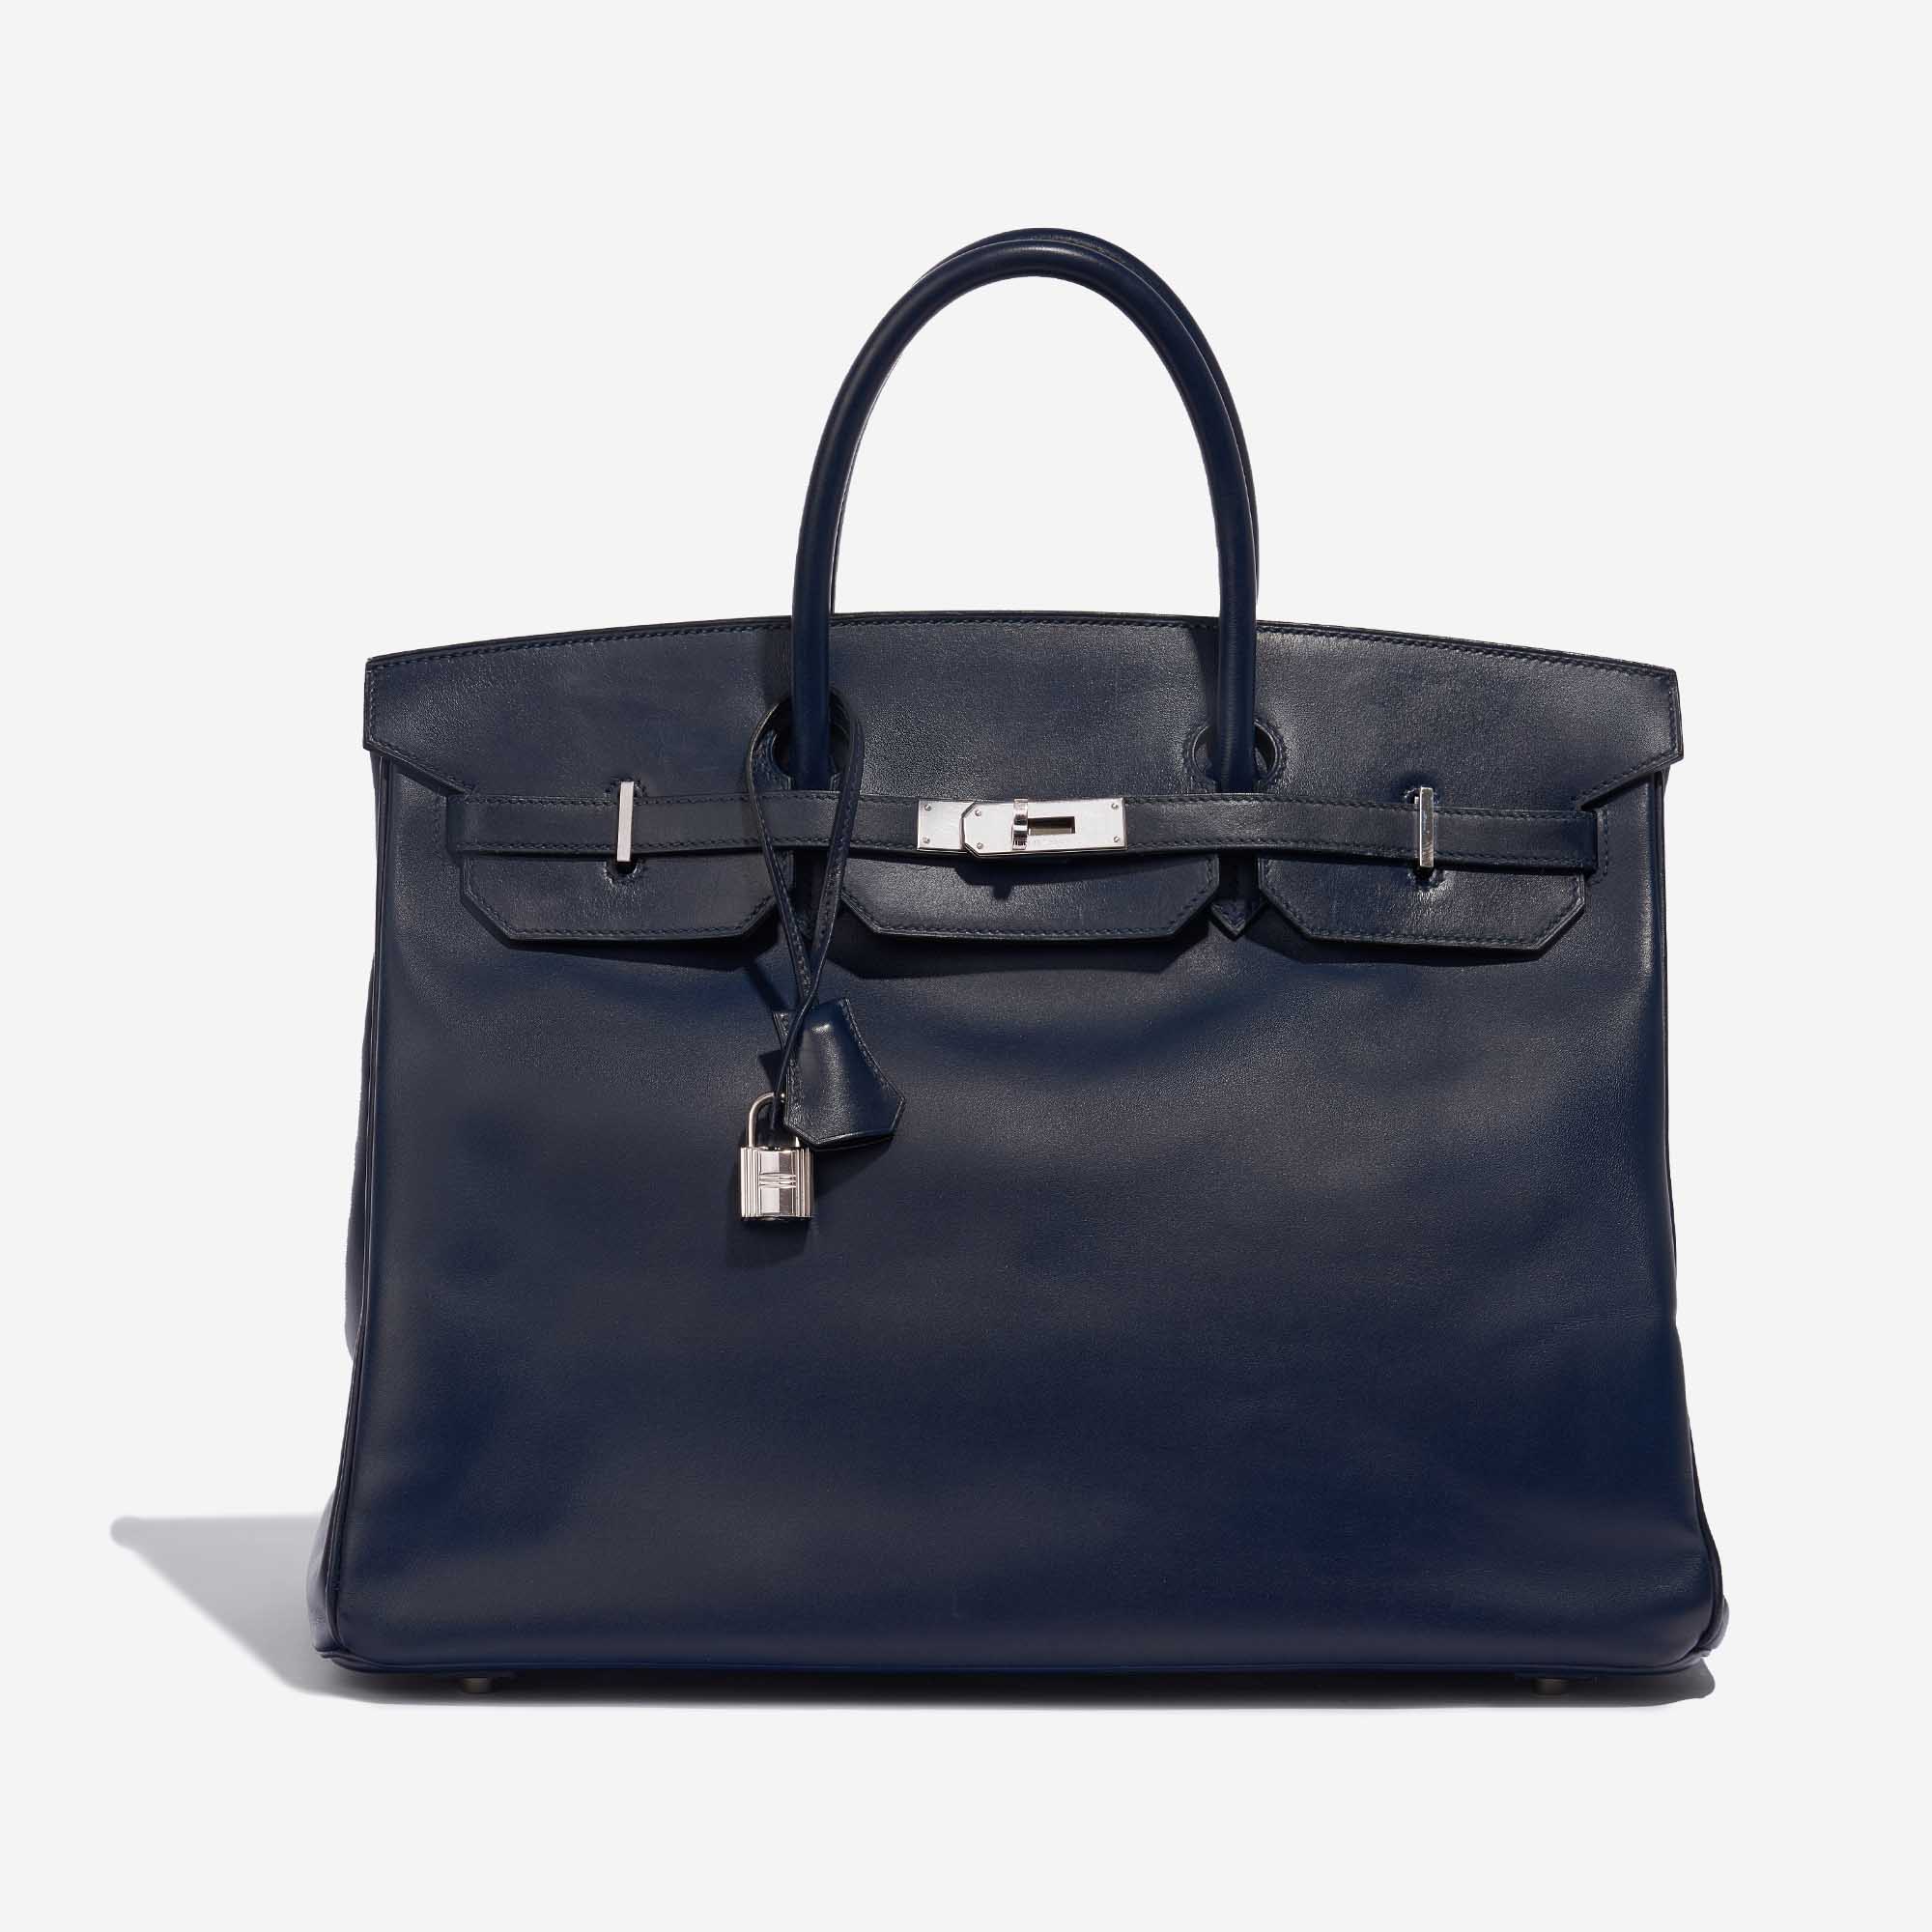 Sac Hermès d'occasion Birkin 40 Swift Bleu Royale Bleu Front | Vendez votre sac de créateur sur Saclab.com